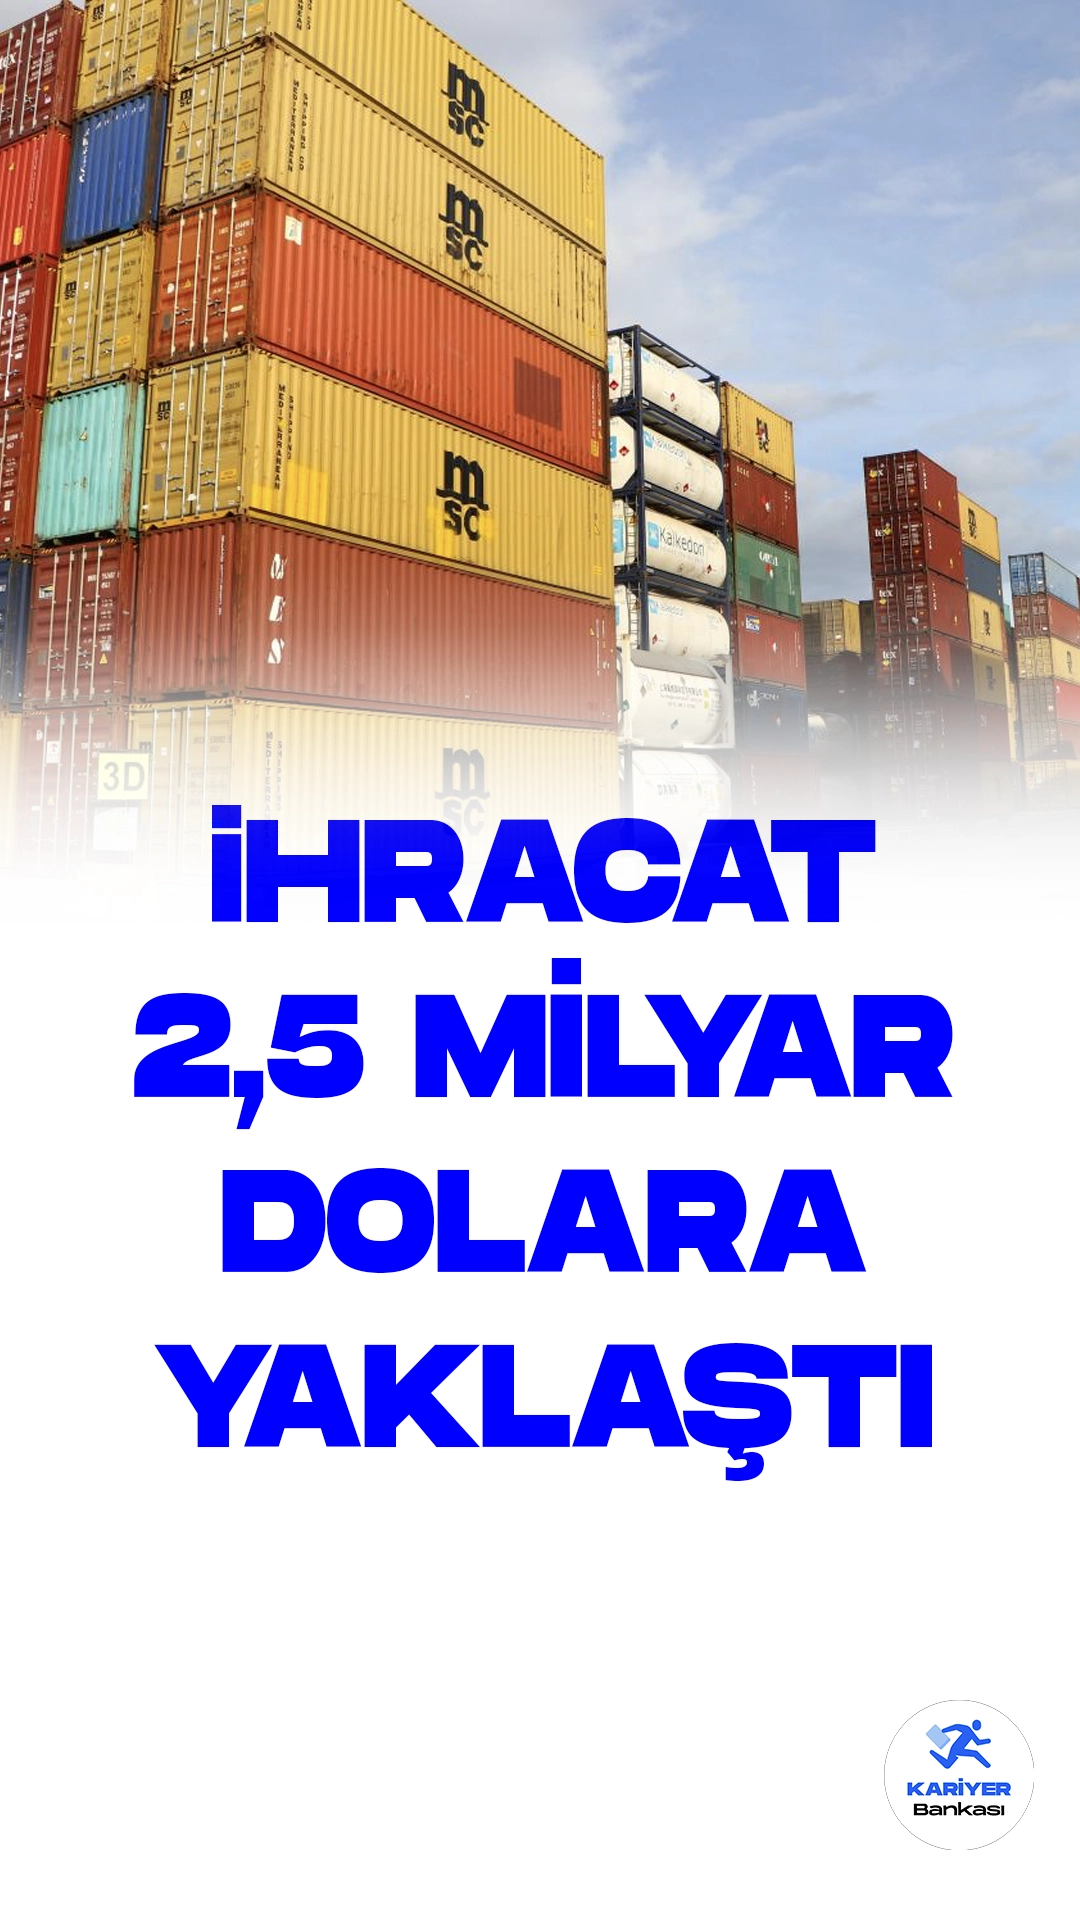 Türkiye'nin Birleşik Arap Emirlikleri'ne (BAE) İhracatı %30,9 Arttı.Türkiye'nin BAE'ye olan ihracatı, 2023 yılının ilk 7 ayında geçen yılın aynı dönemine kıyasla %30,9 artarak 2 milyar 460 milyon dolara ulaştı. Bu artış, Türkiye ile BAE arasındaki ticari ve ekonomik iş birliklerinin sonuçlarını yansıtıyor.